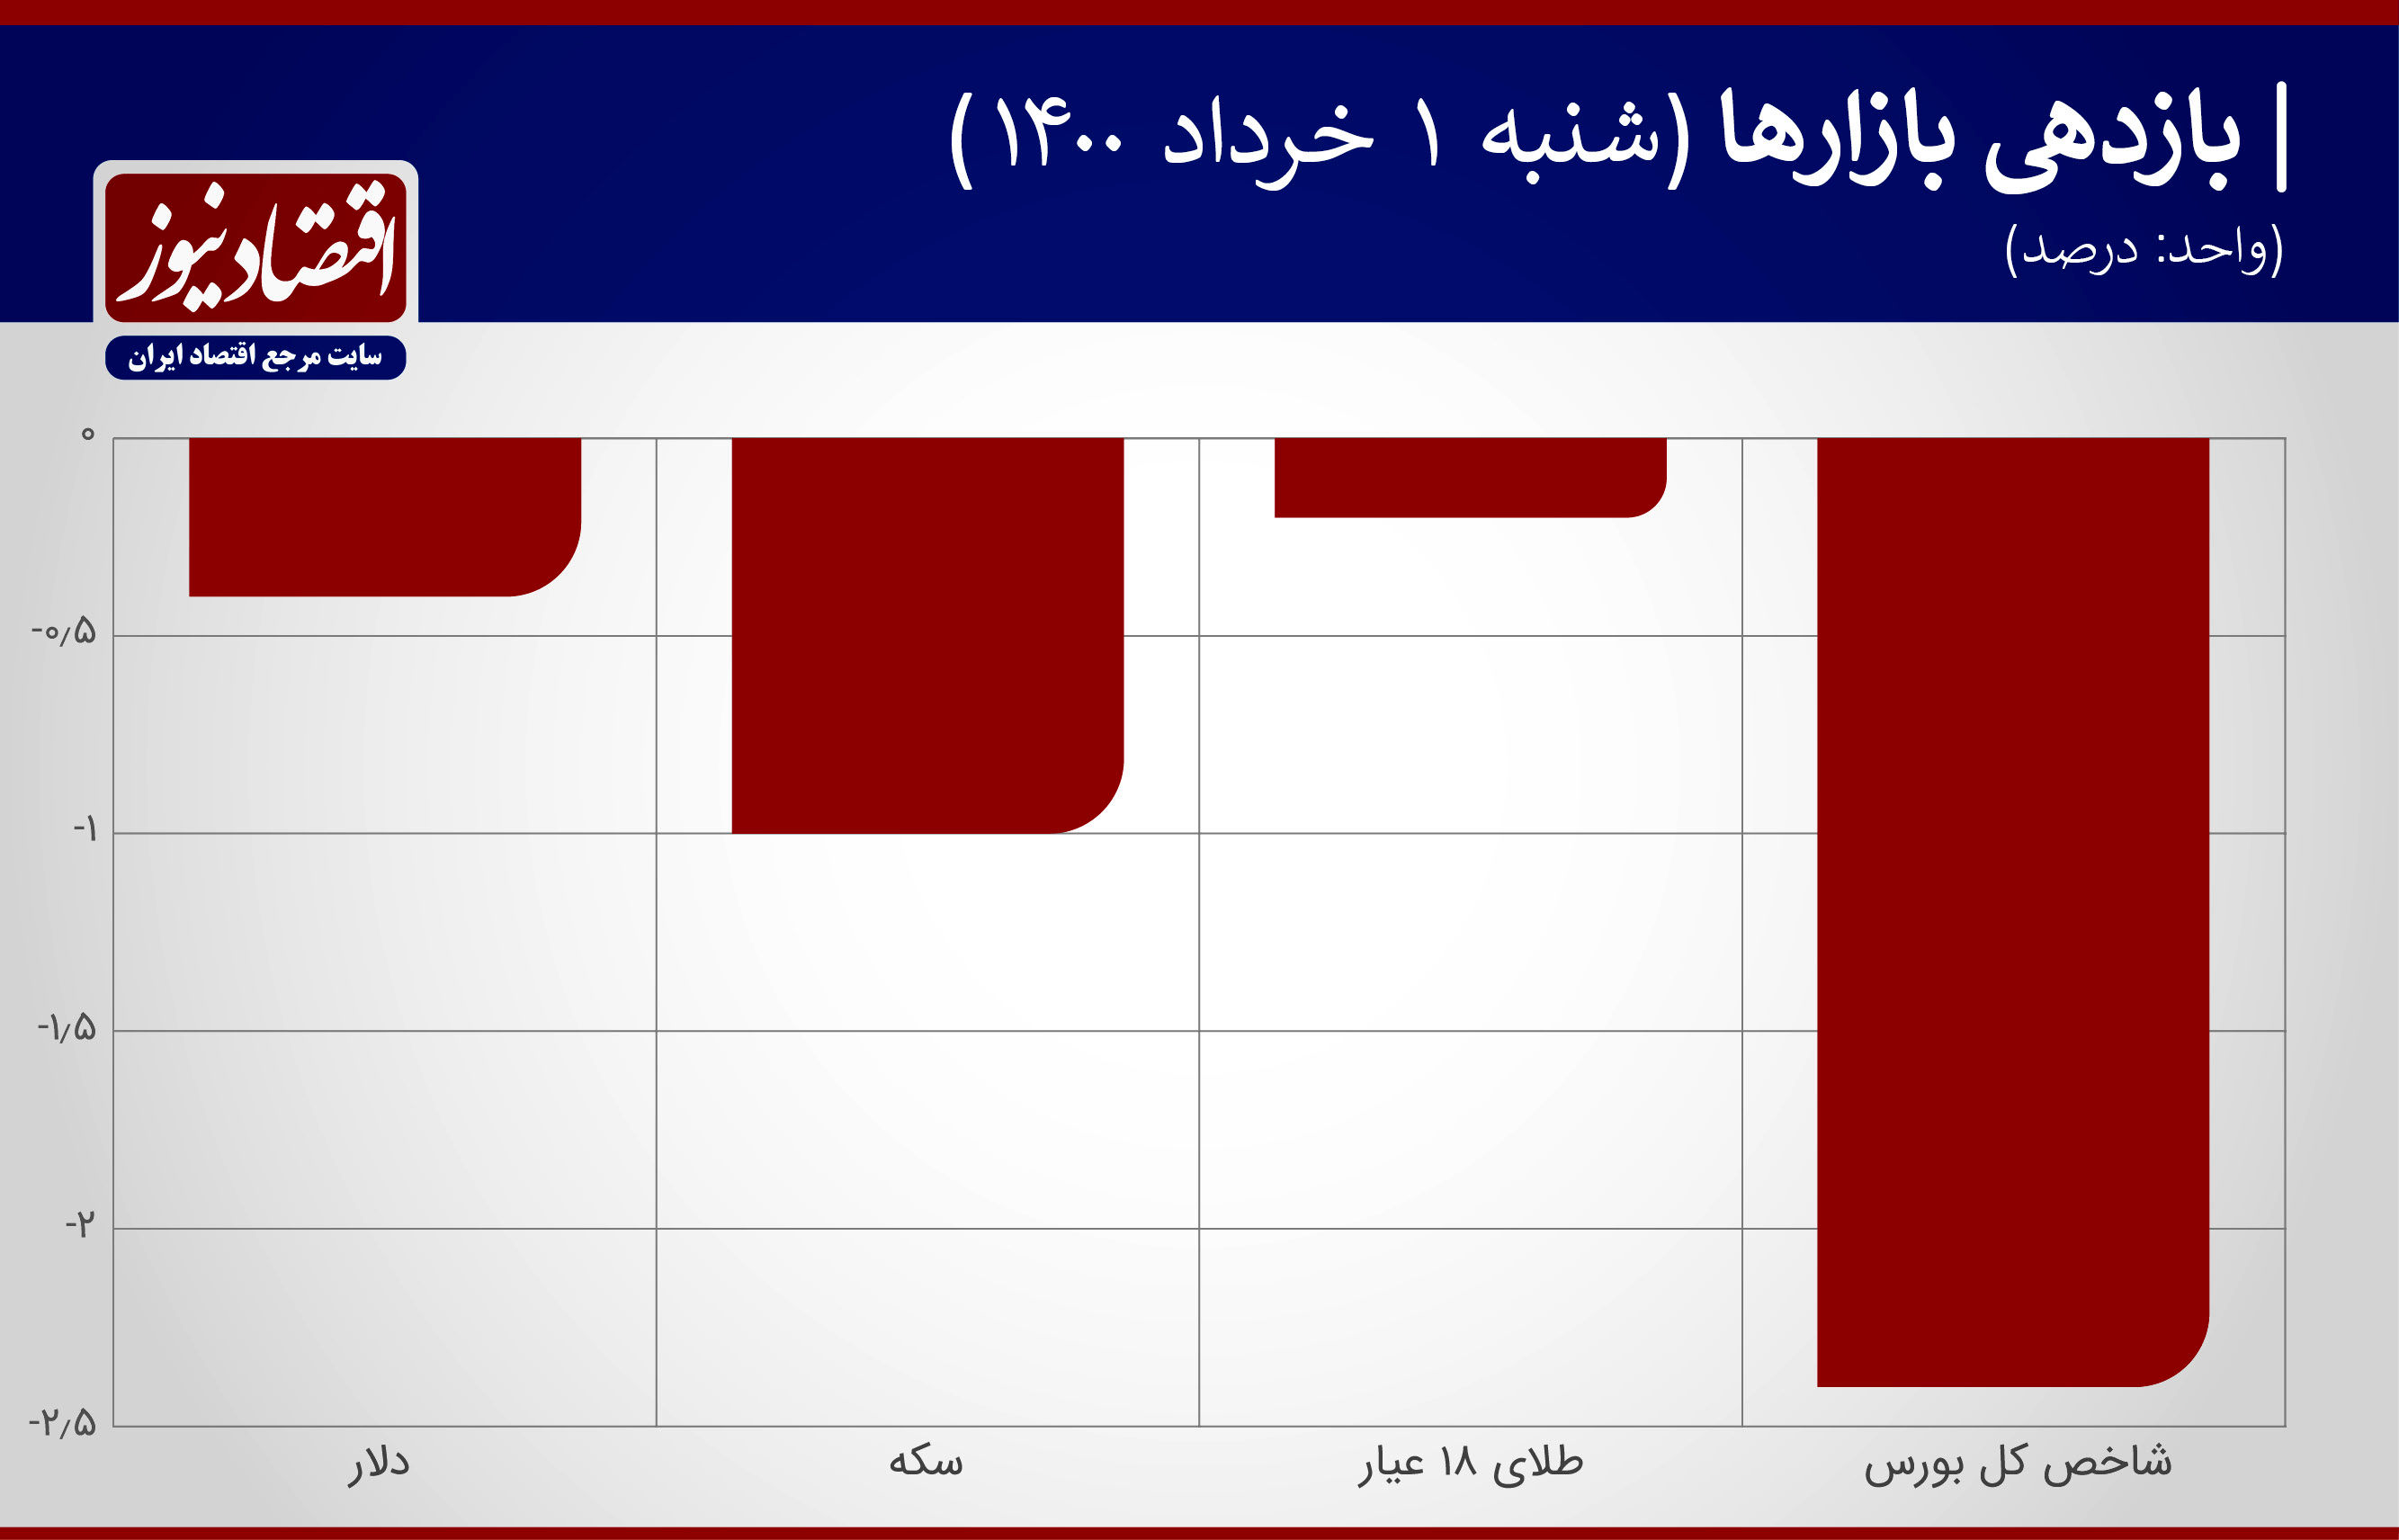 سکوت مجلس، نزول دلار + نمودار